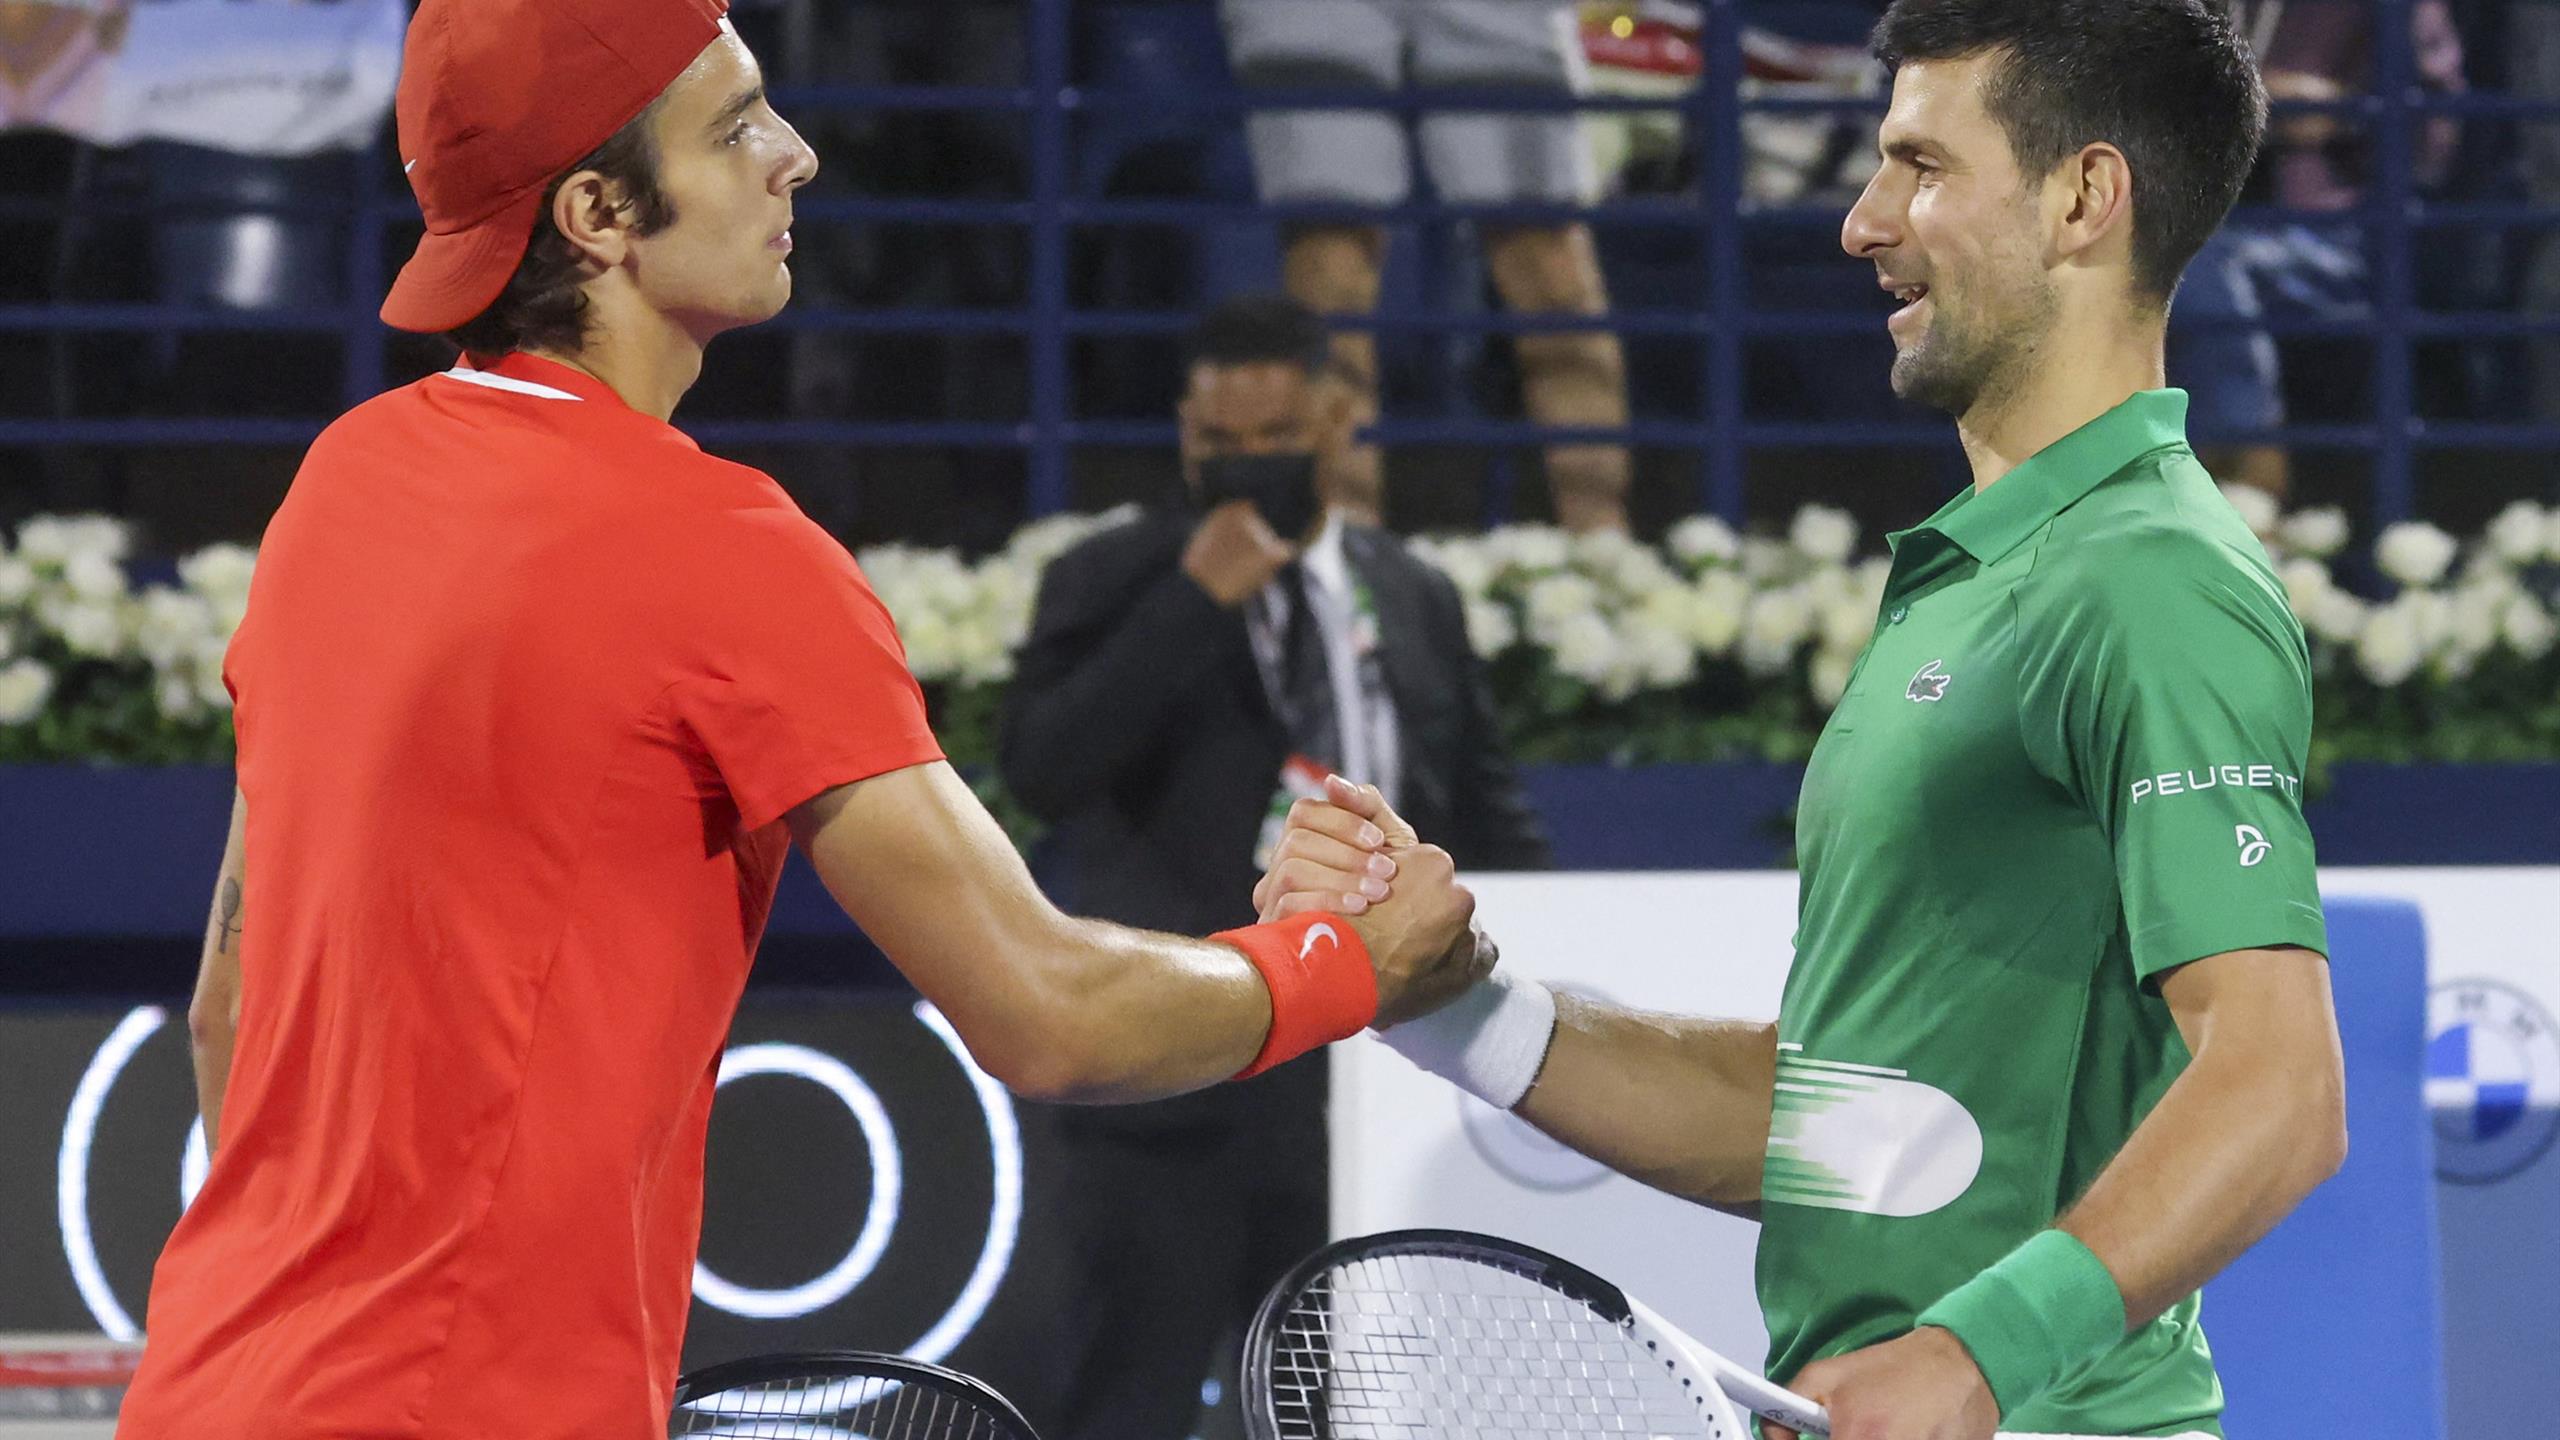 Djokovic incorona Musetti: "Ha un brillante futuro davanti a sè"